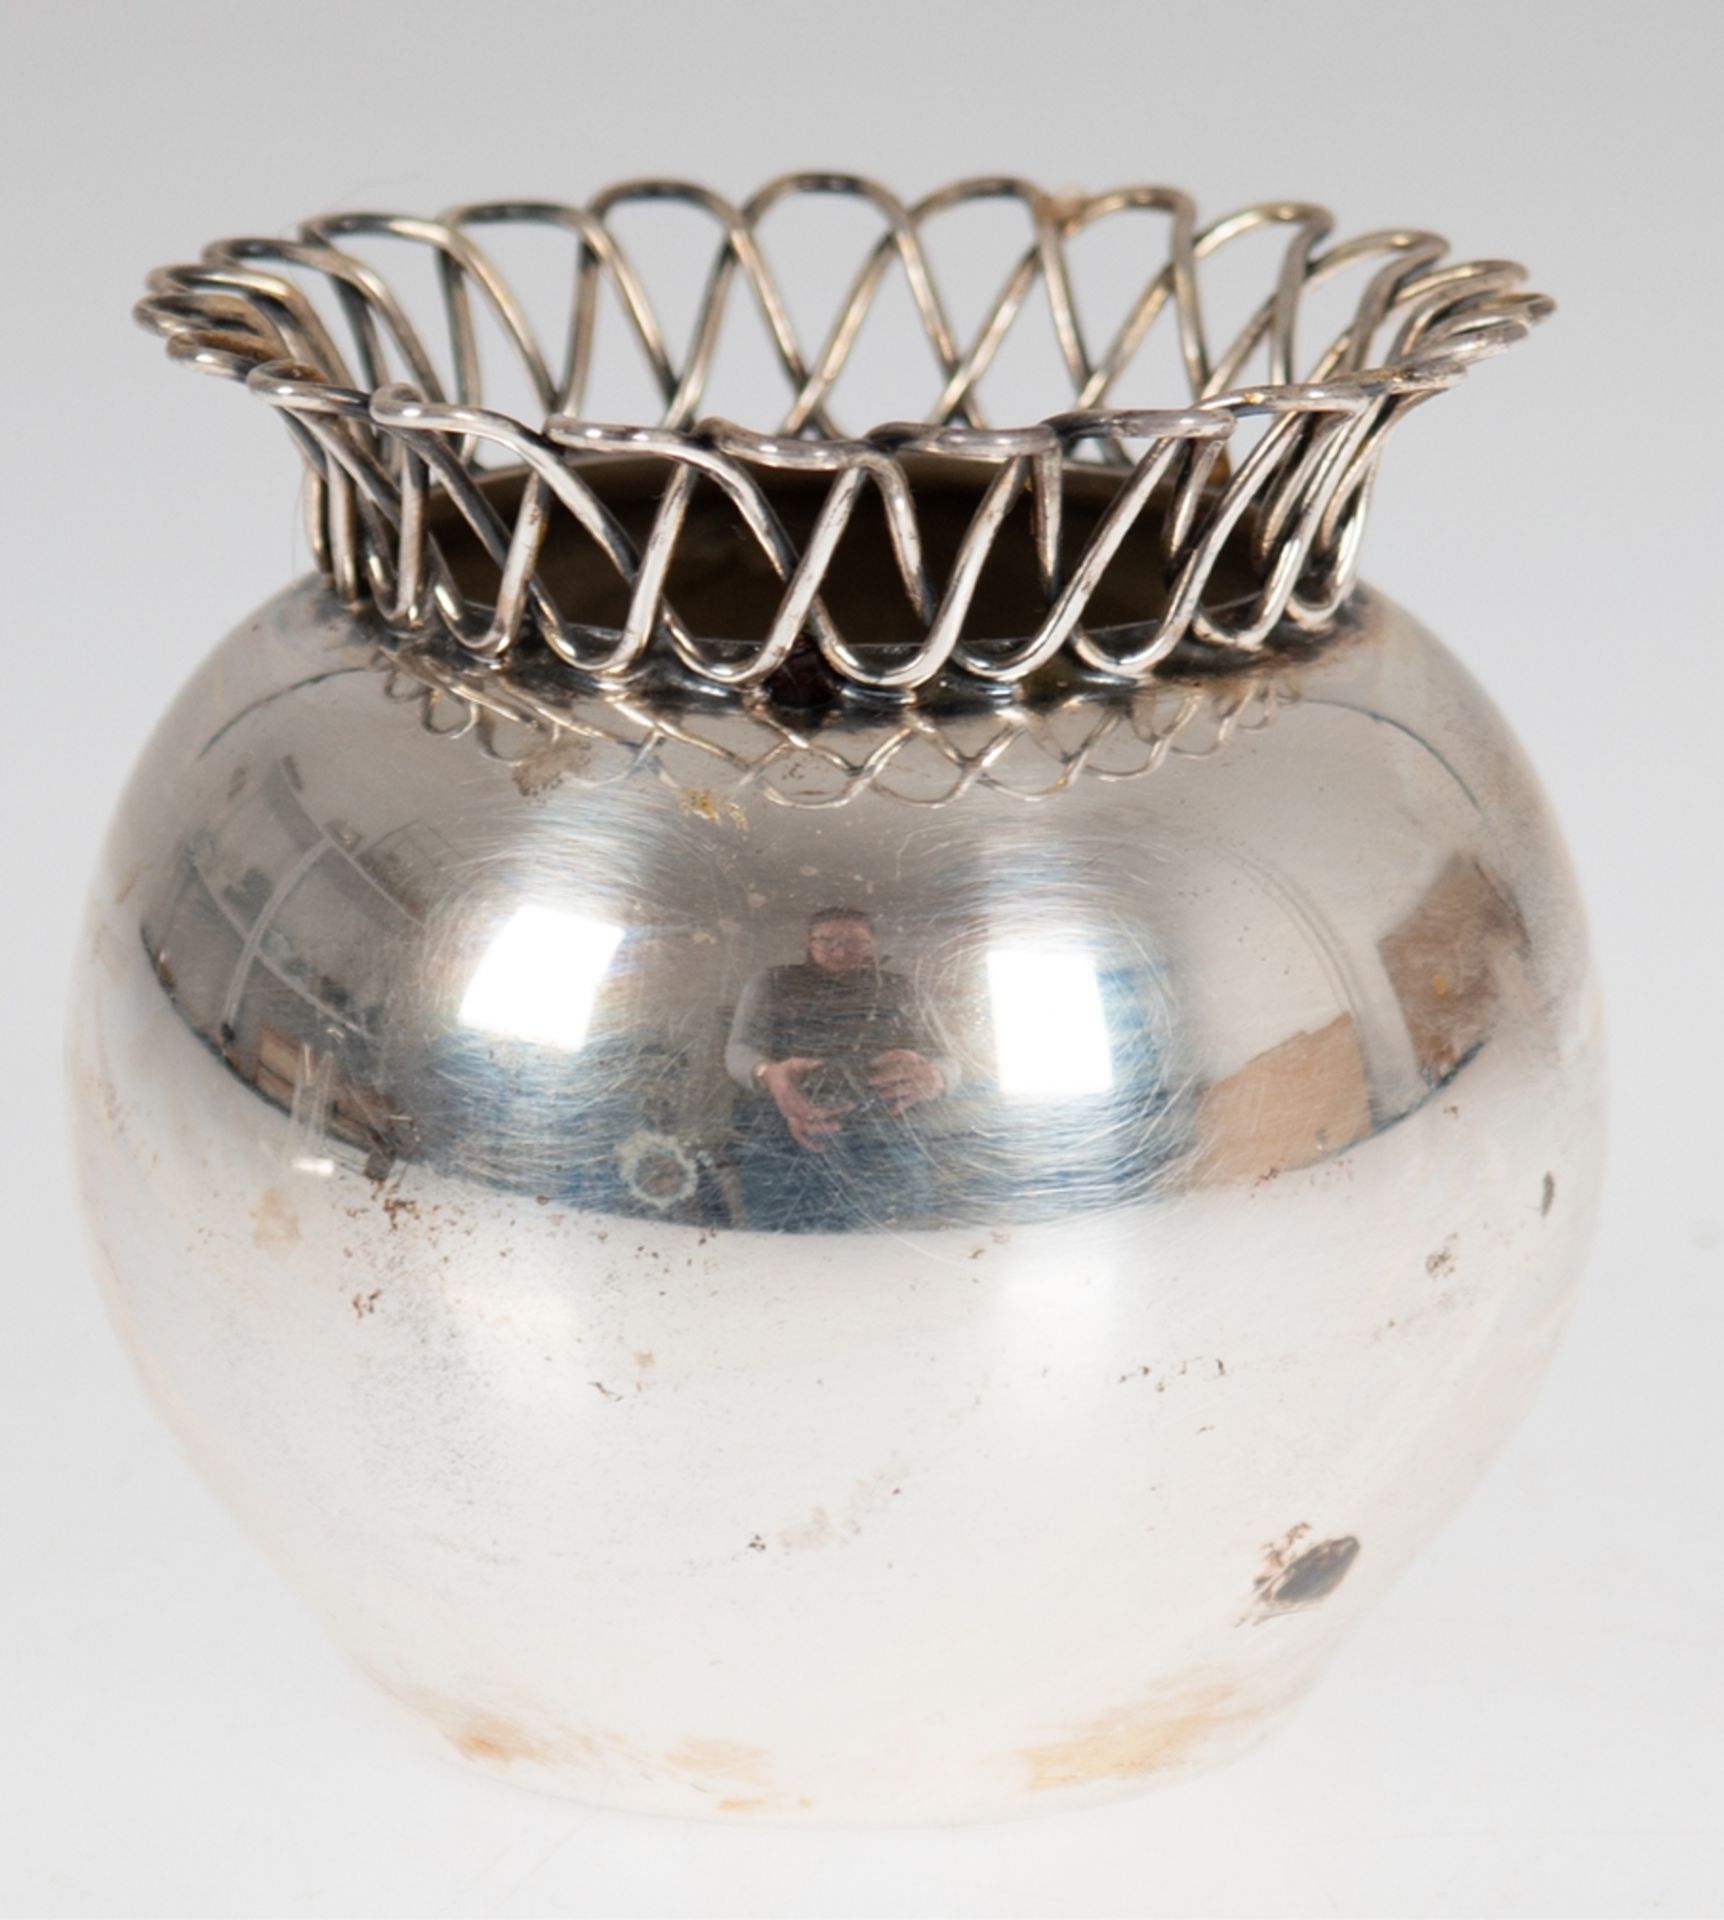 Vase mit Flechtkragen, 925er Silber, punziert, 130 g, H. 8,2 cm